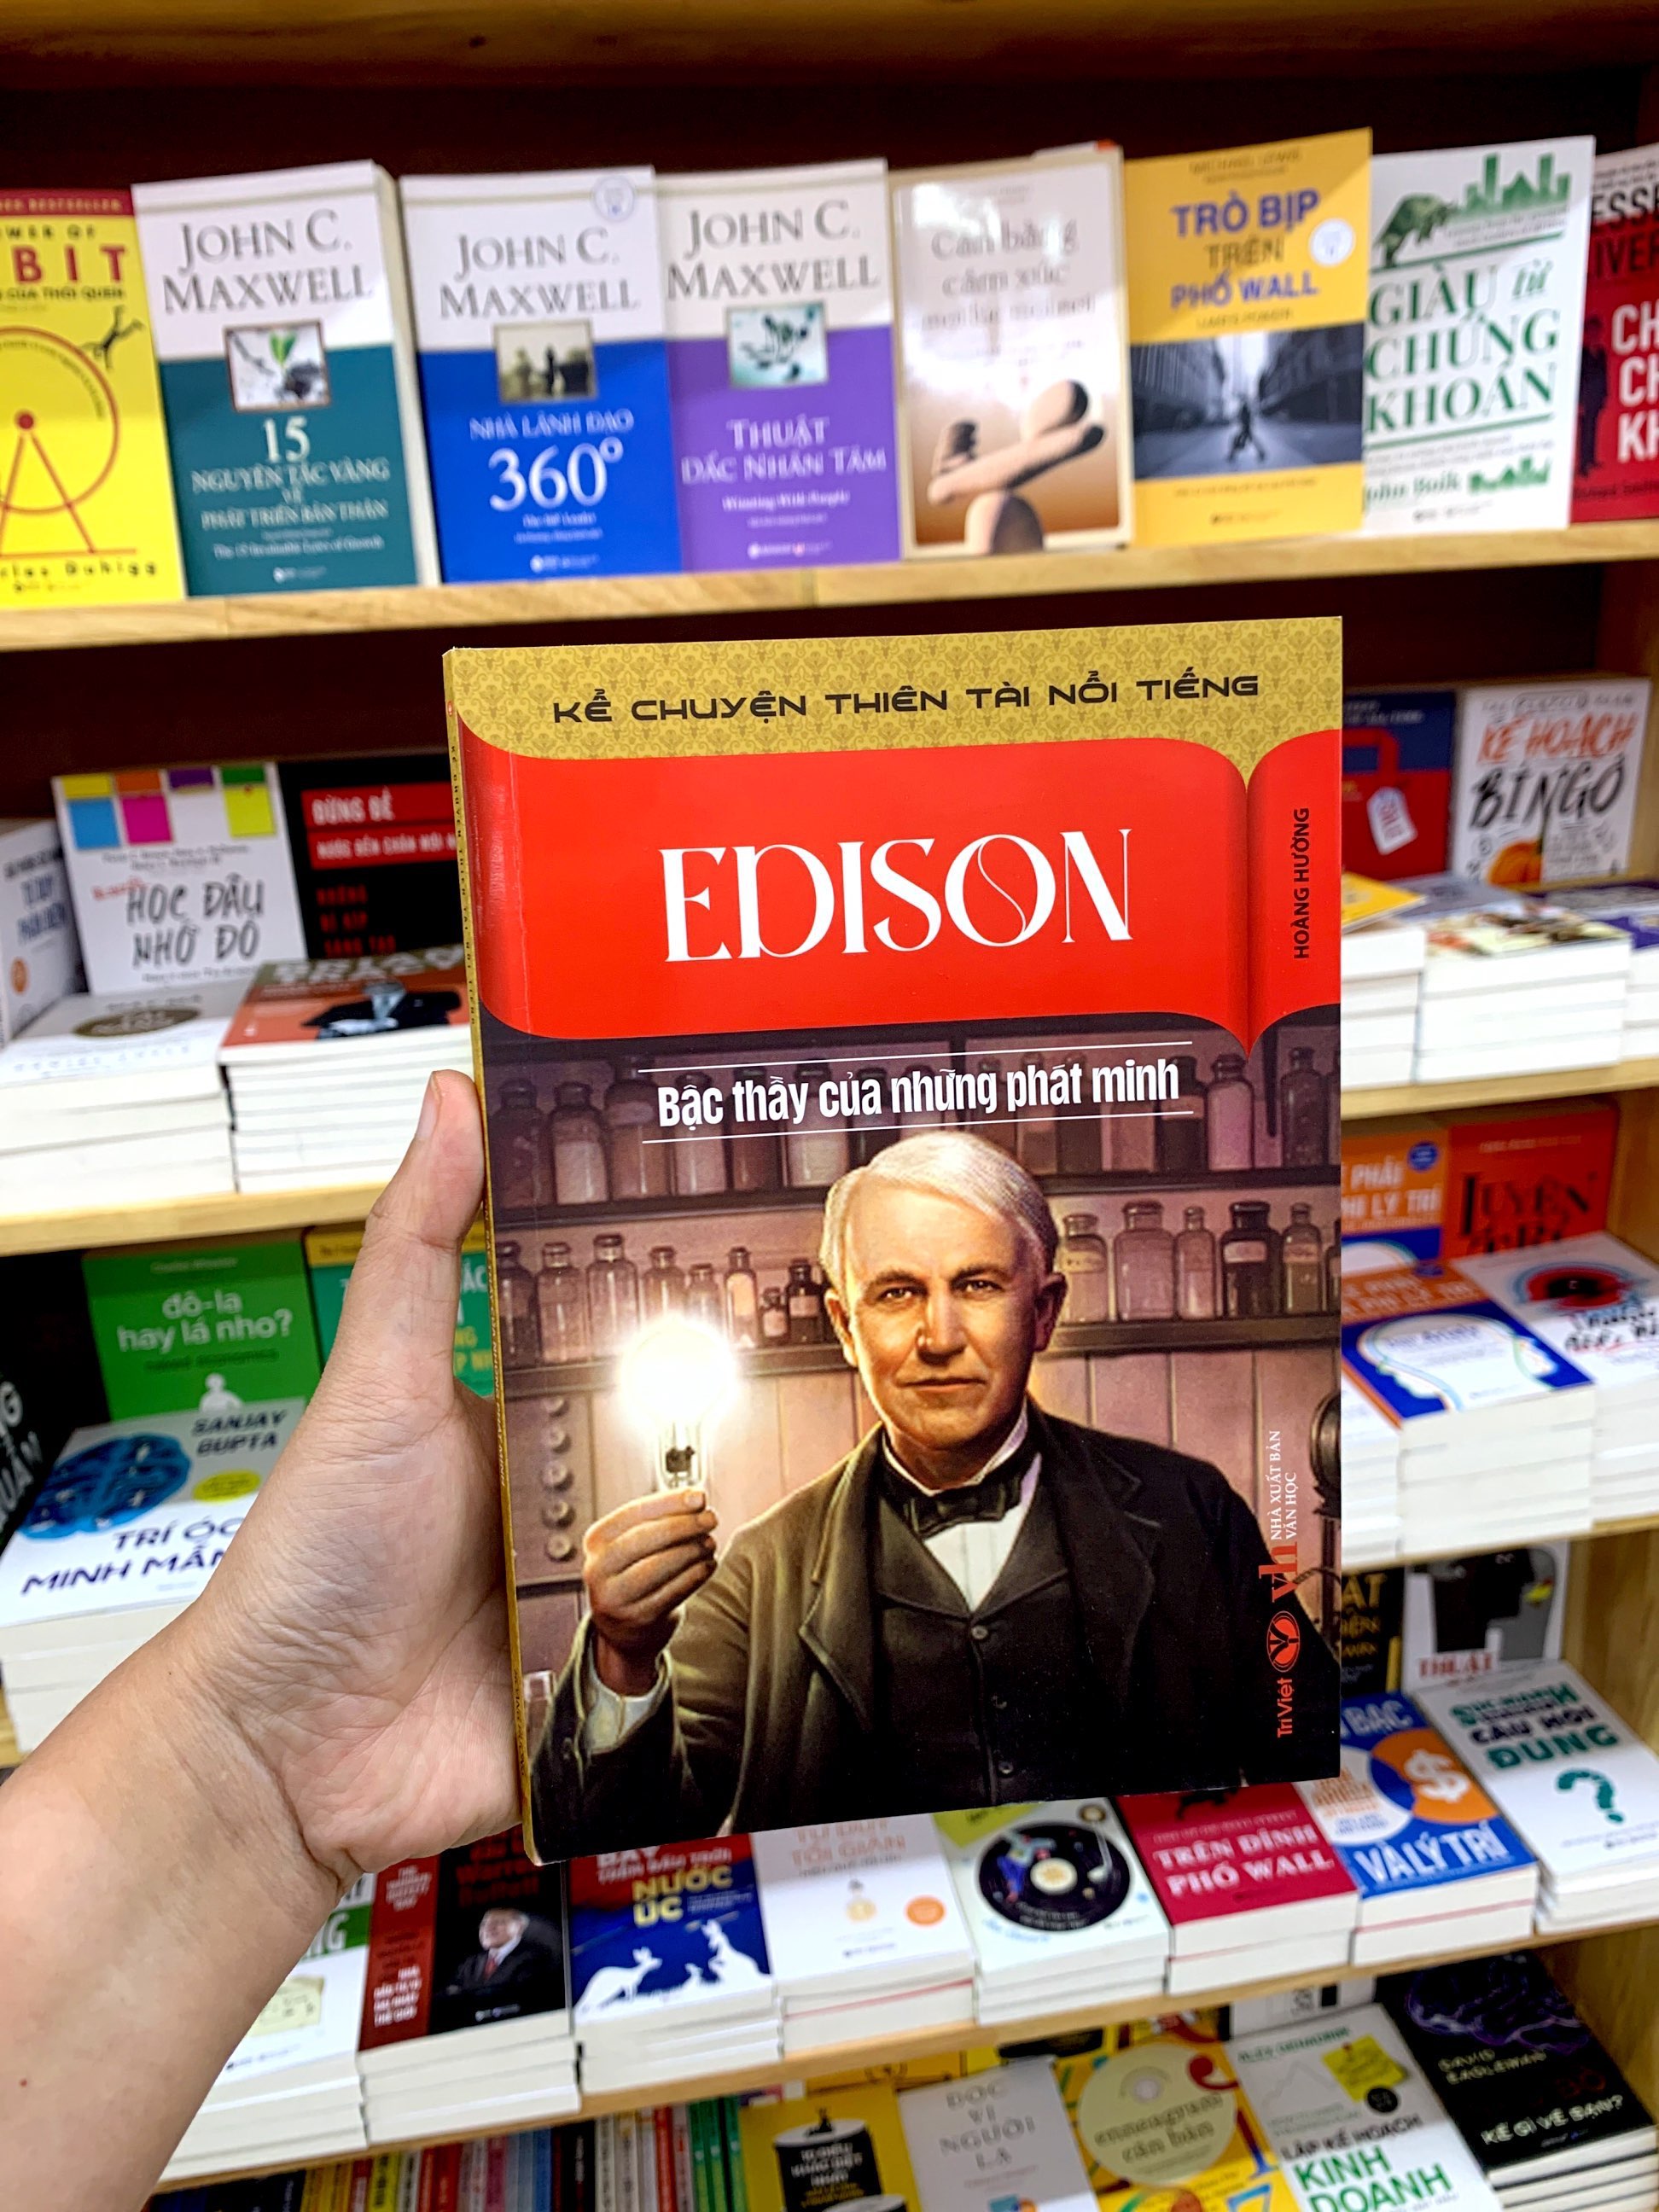 Kể Chuyện Thiên Tài Nổi Tiếng - Edison - Bậc Thầy Của Những Phát Minh